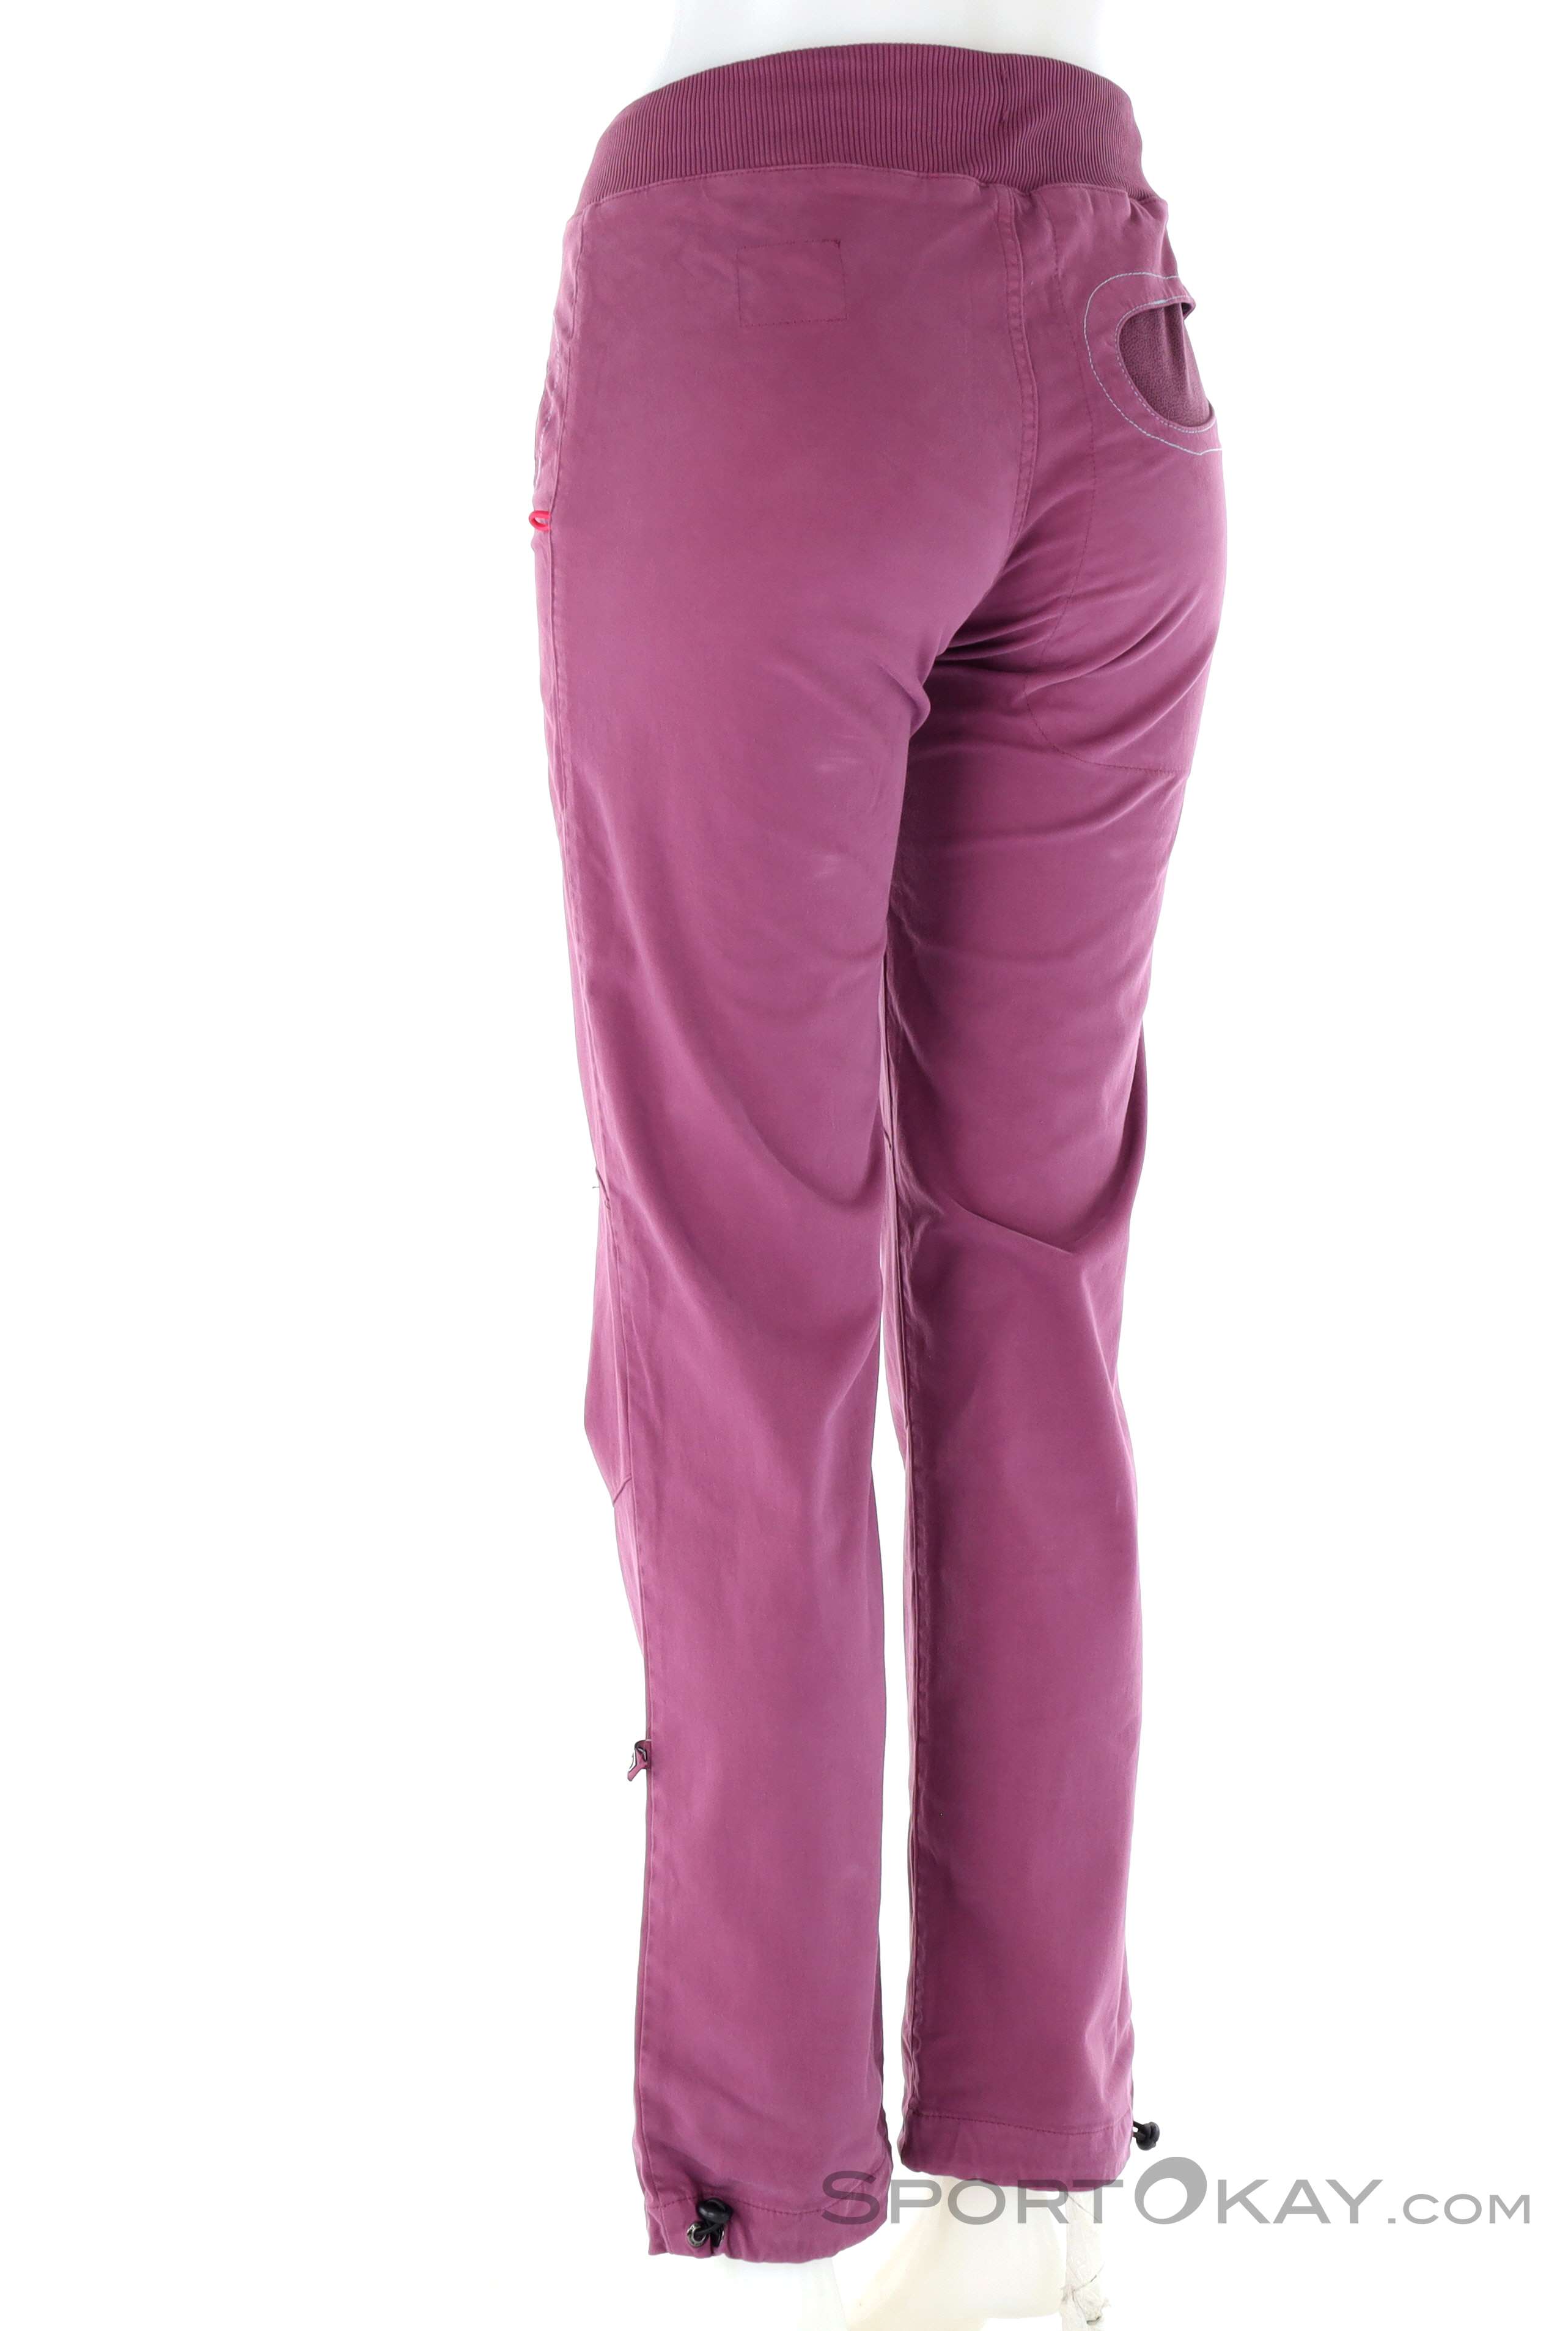 E9 Ondart Slim 2.2 - Bouldering trousers Women's